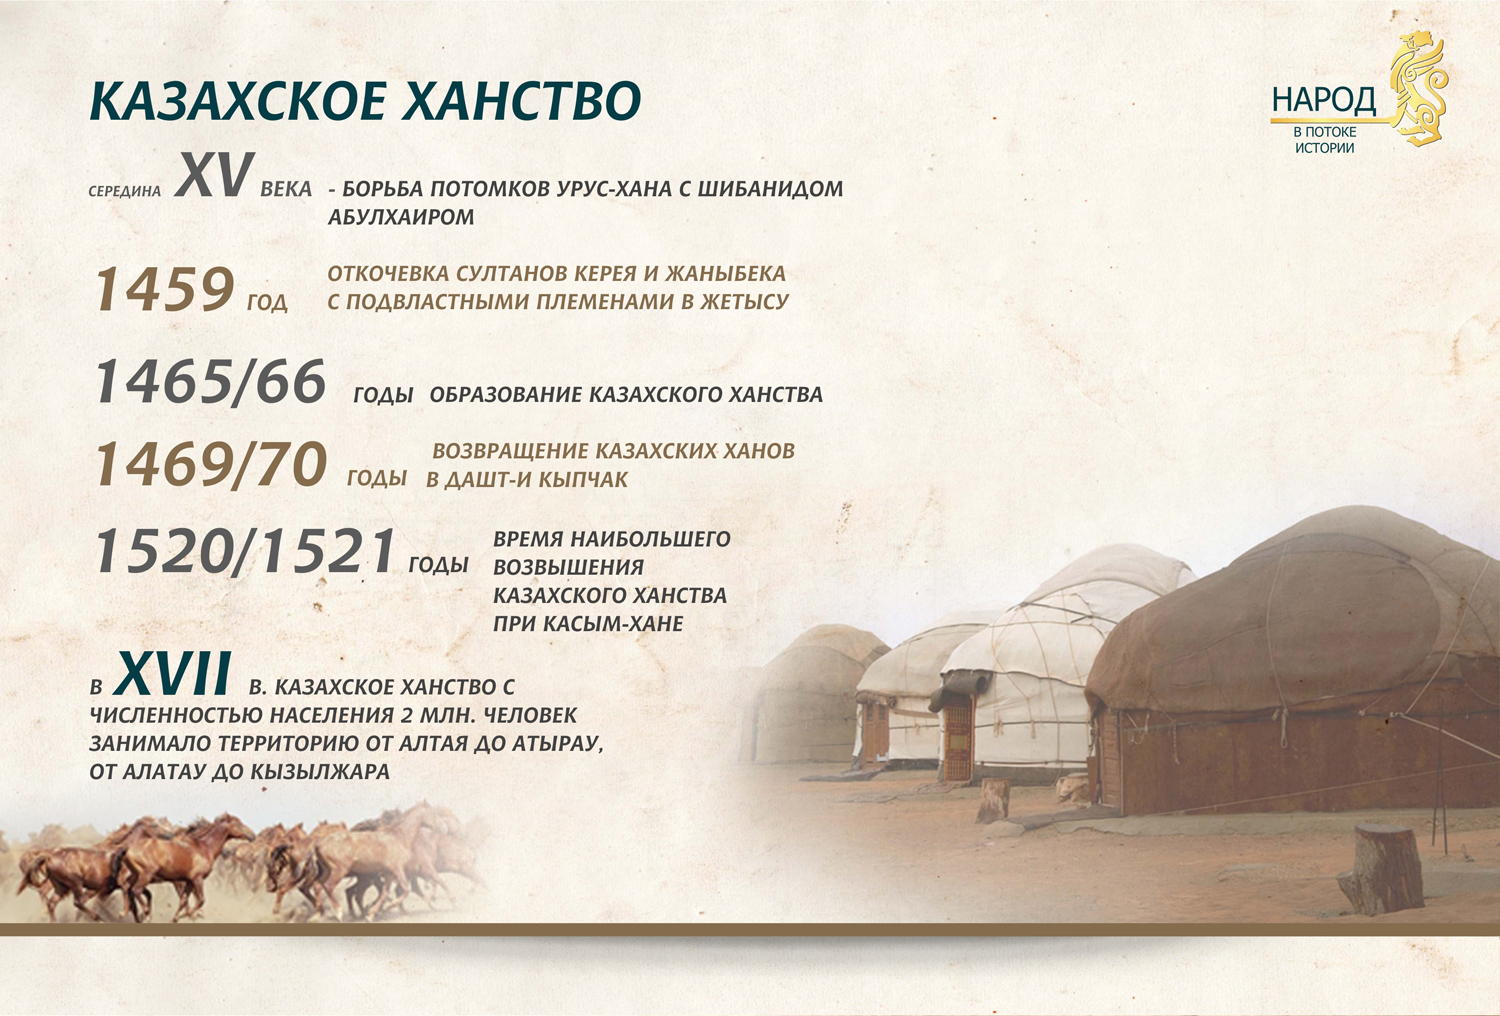 Народы казахского ханства. Образование казахского ханства. Год основания казахского ханства. Год образования казахского ханства. Когда образовалалось казахское ханство.